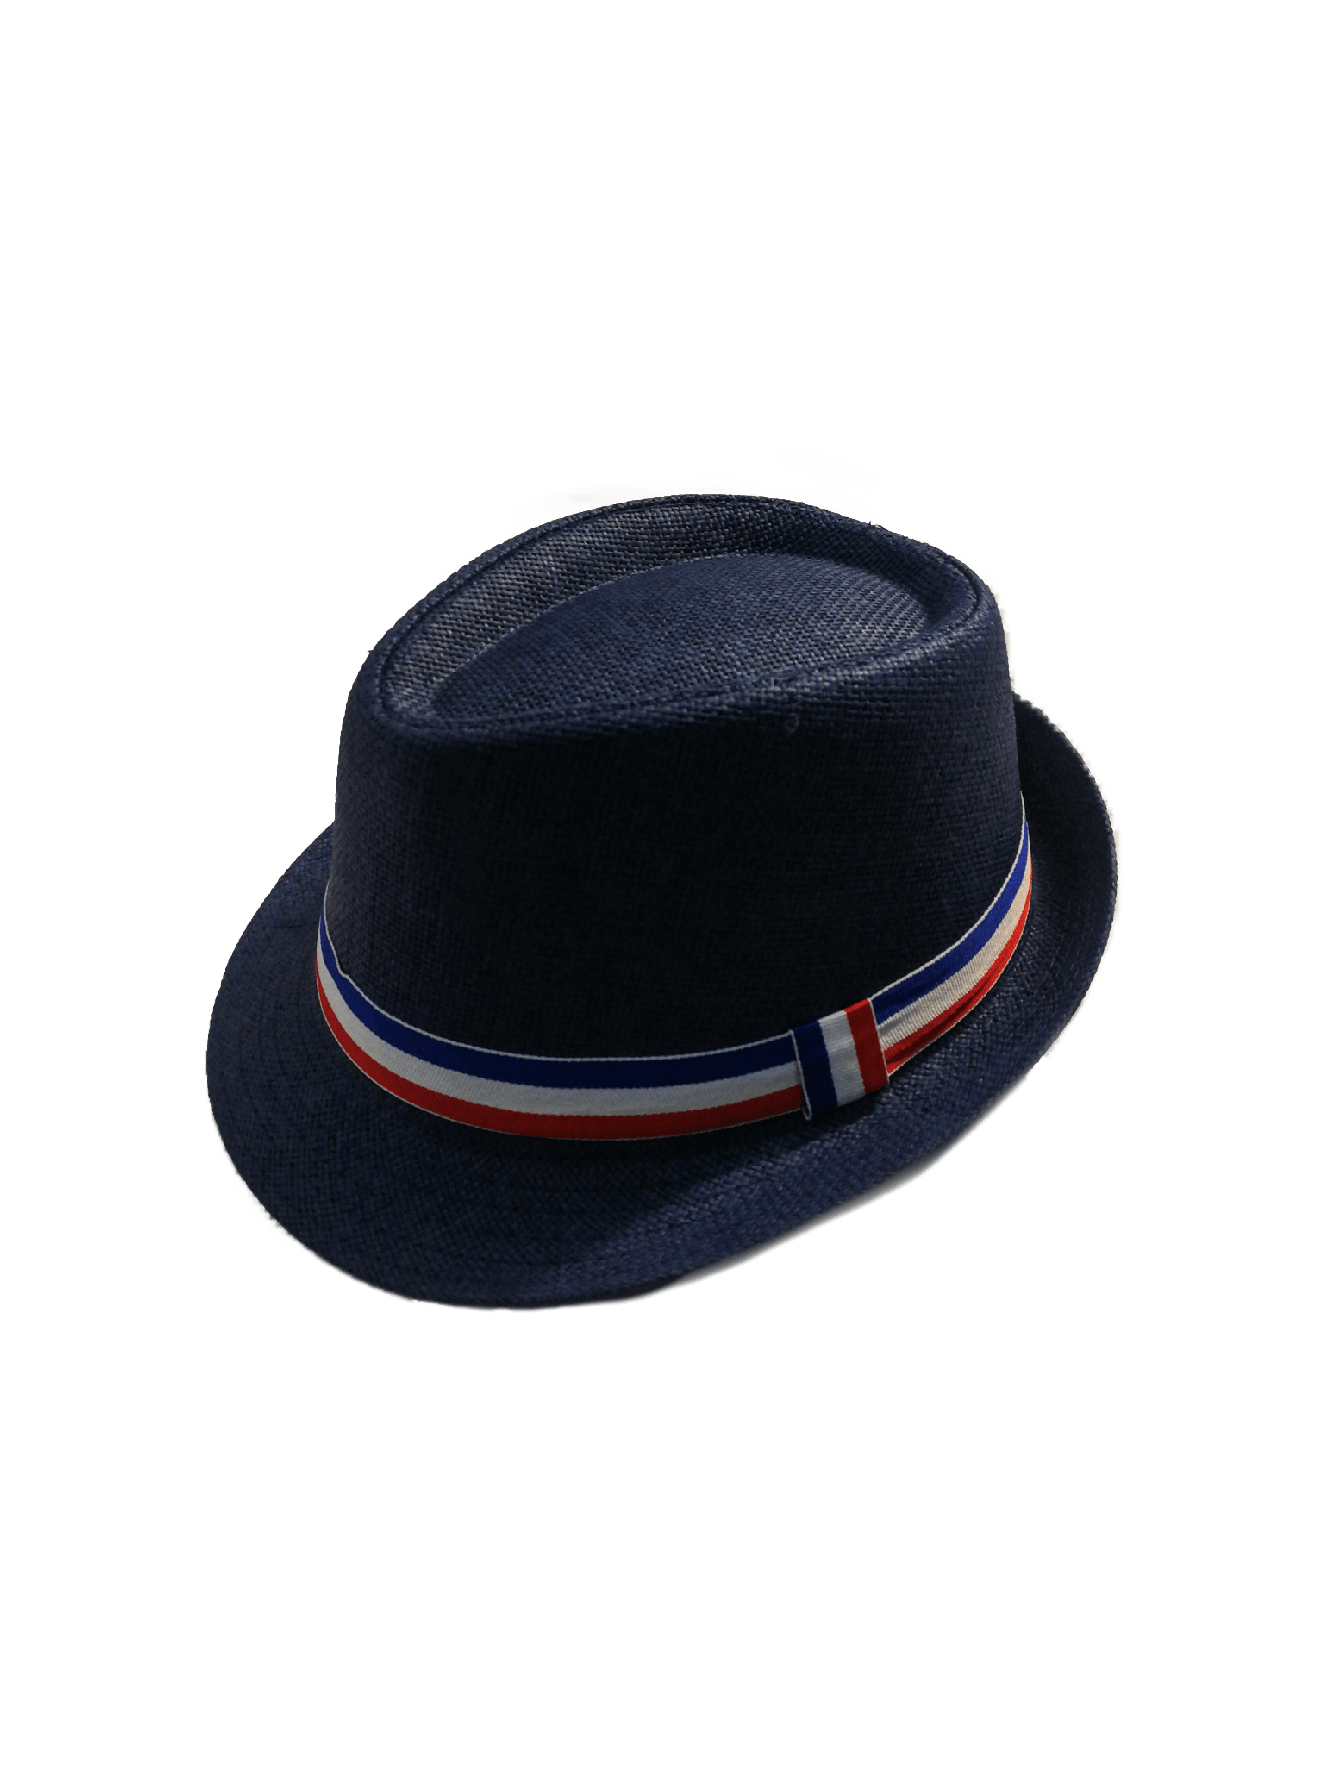 Chapeaux de paille France  (x12) 1,90€/unité | Grossiste-pro